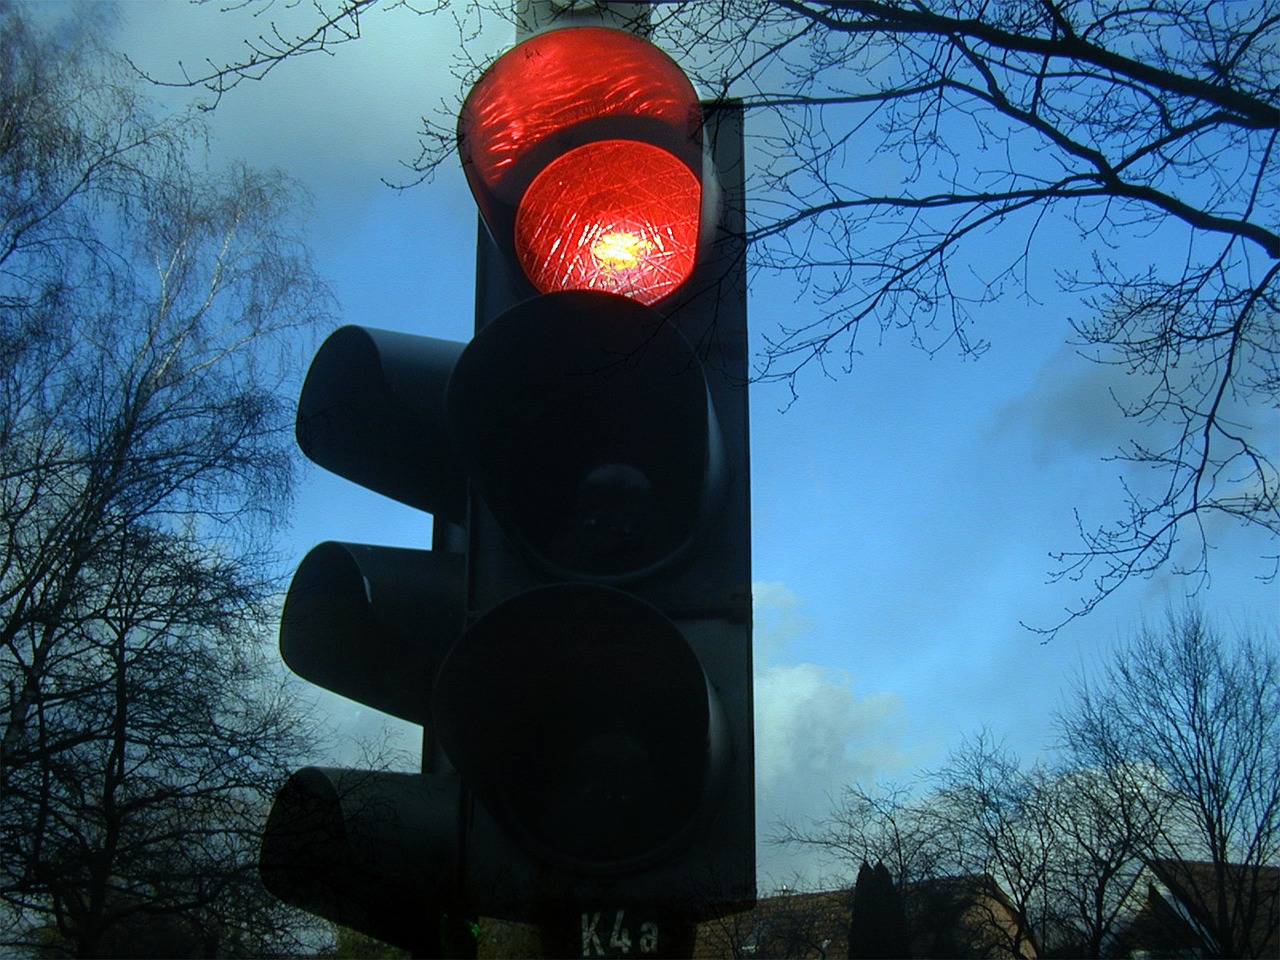 ¿Qué hay que hacer cuando el semáforo está en amarillo intermitente?